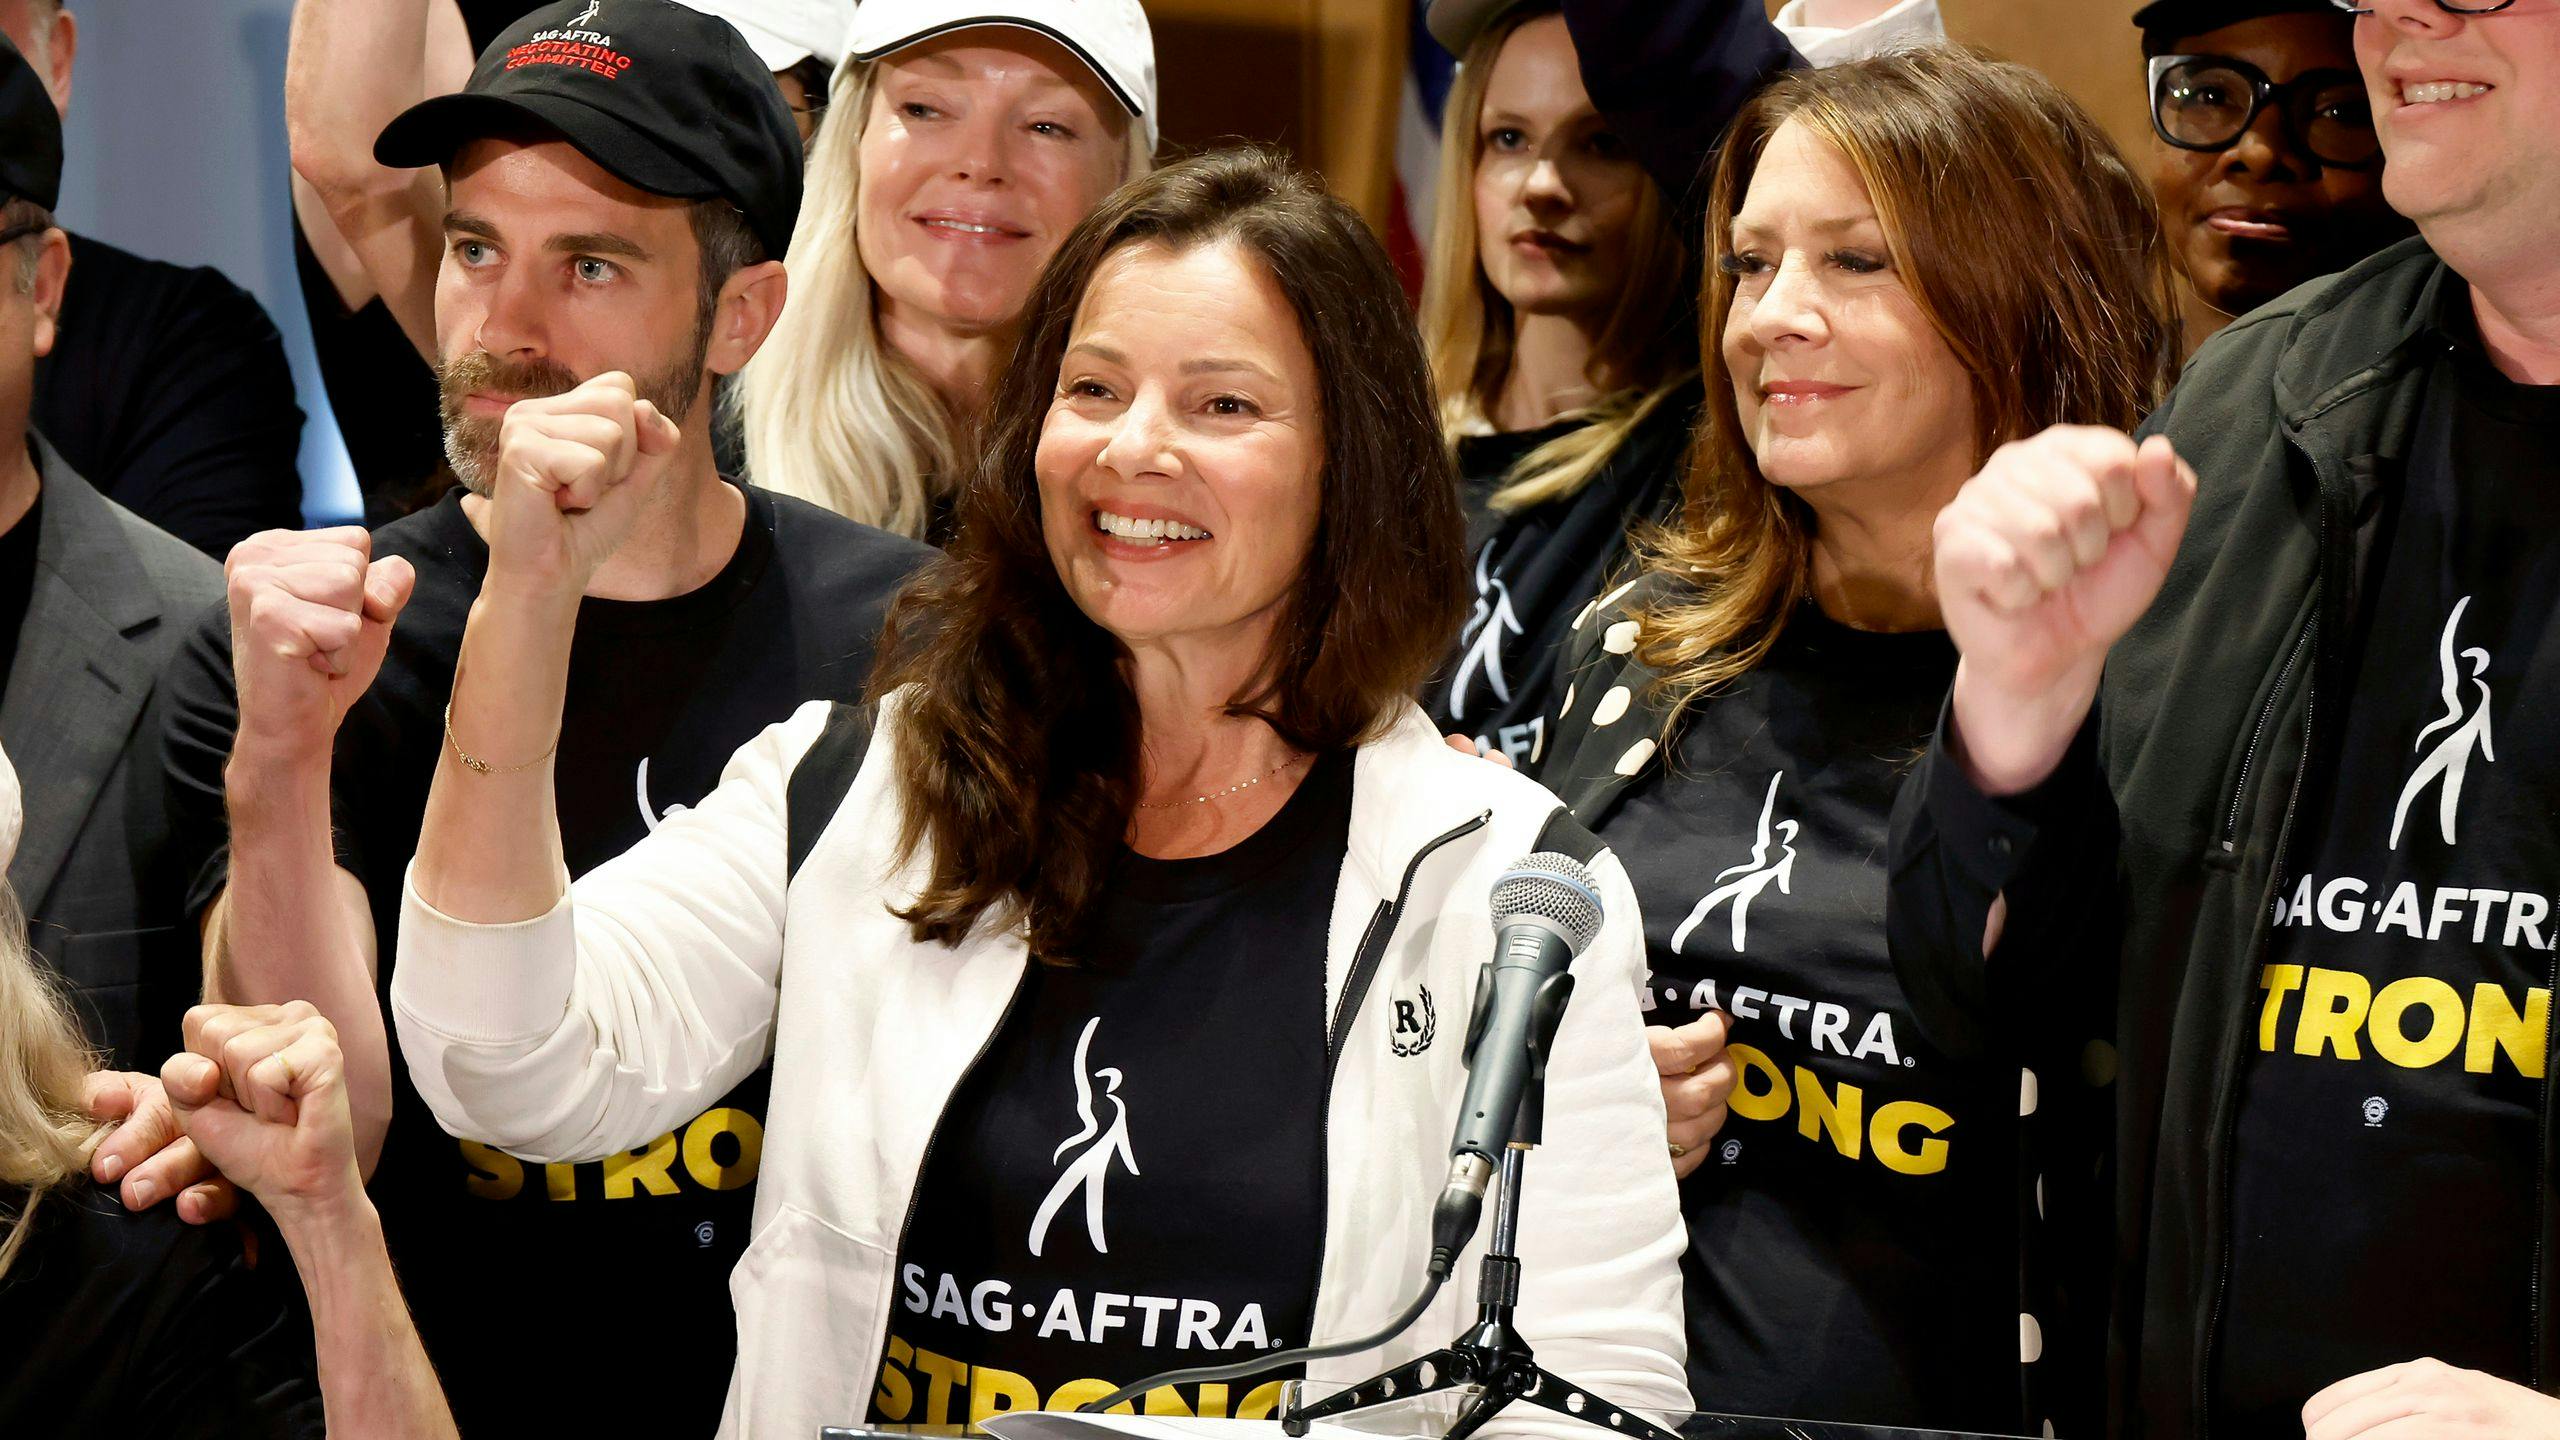 La presidenta del sindicato SAG-AFTRA, la actriz Fran Drescher, sonríe tras anunciar la huelga de actores y actrices de Hollywood